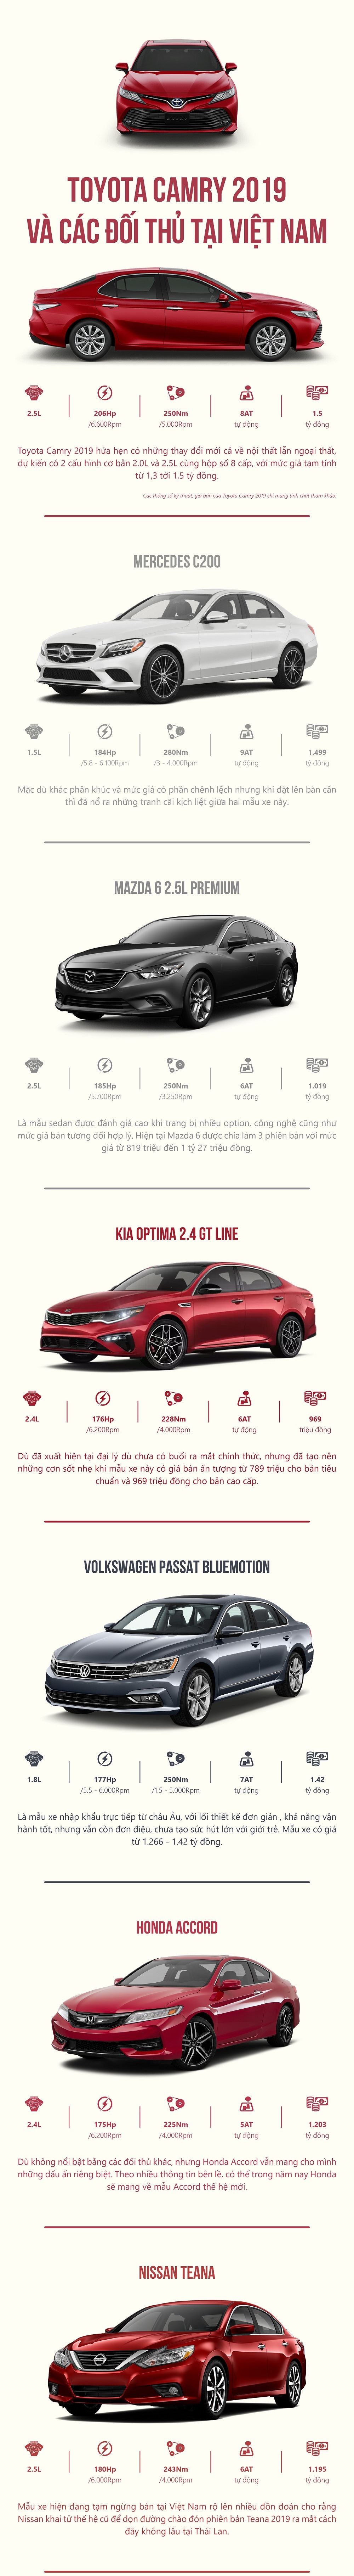 Tổng hợp các đối thủ của Toyota Camry 2019 tại thị trường Việt Nam,,